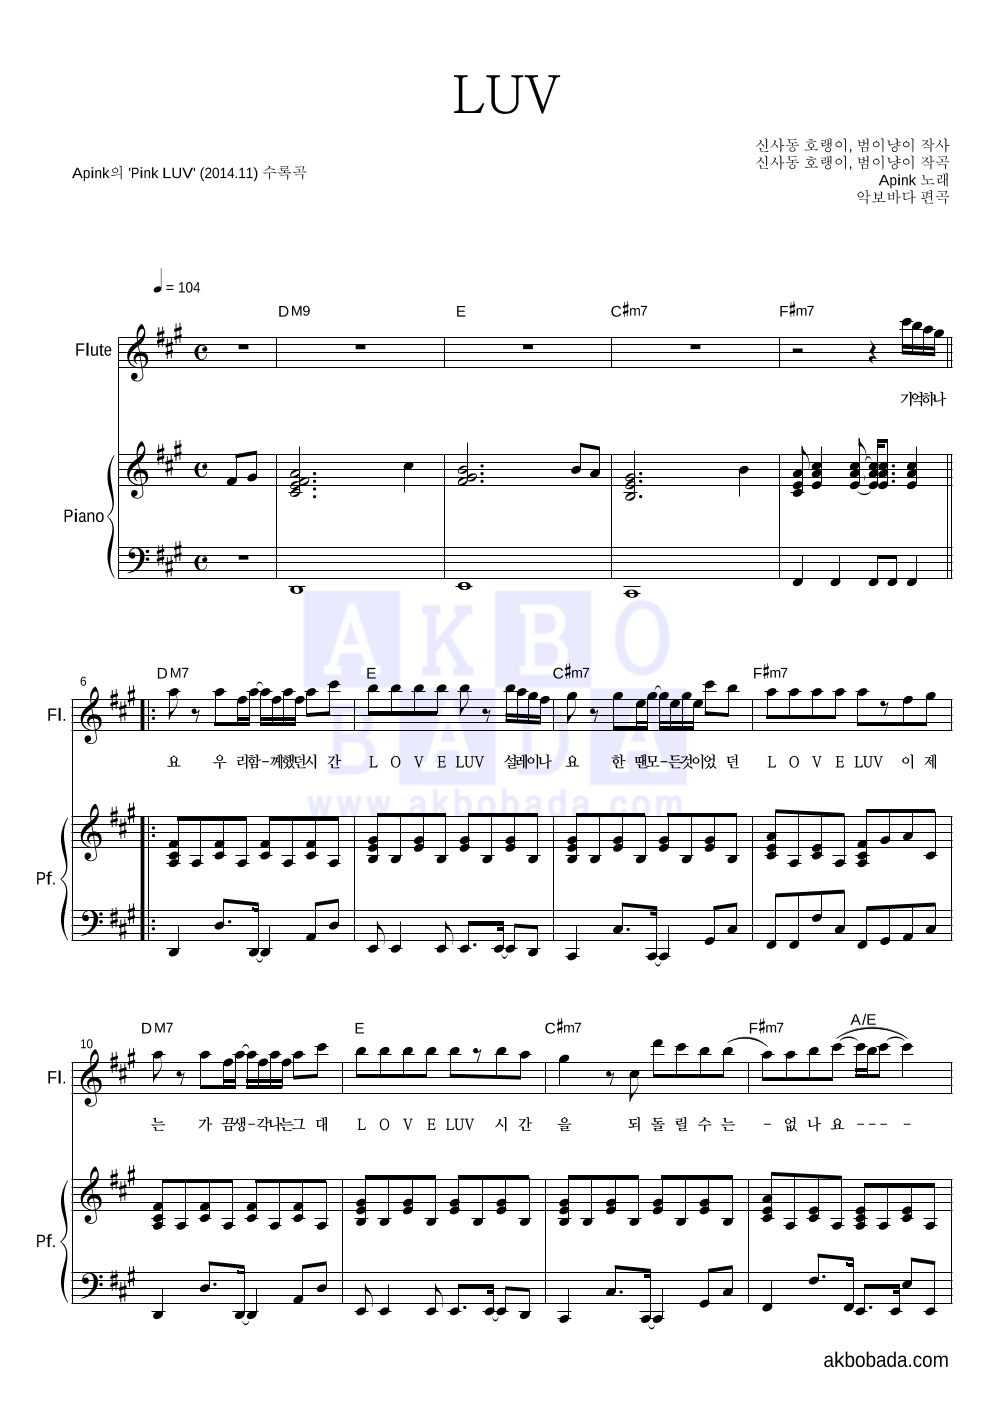 에이핑크 - LUV 플룻&피아노 악보 